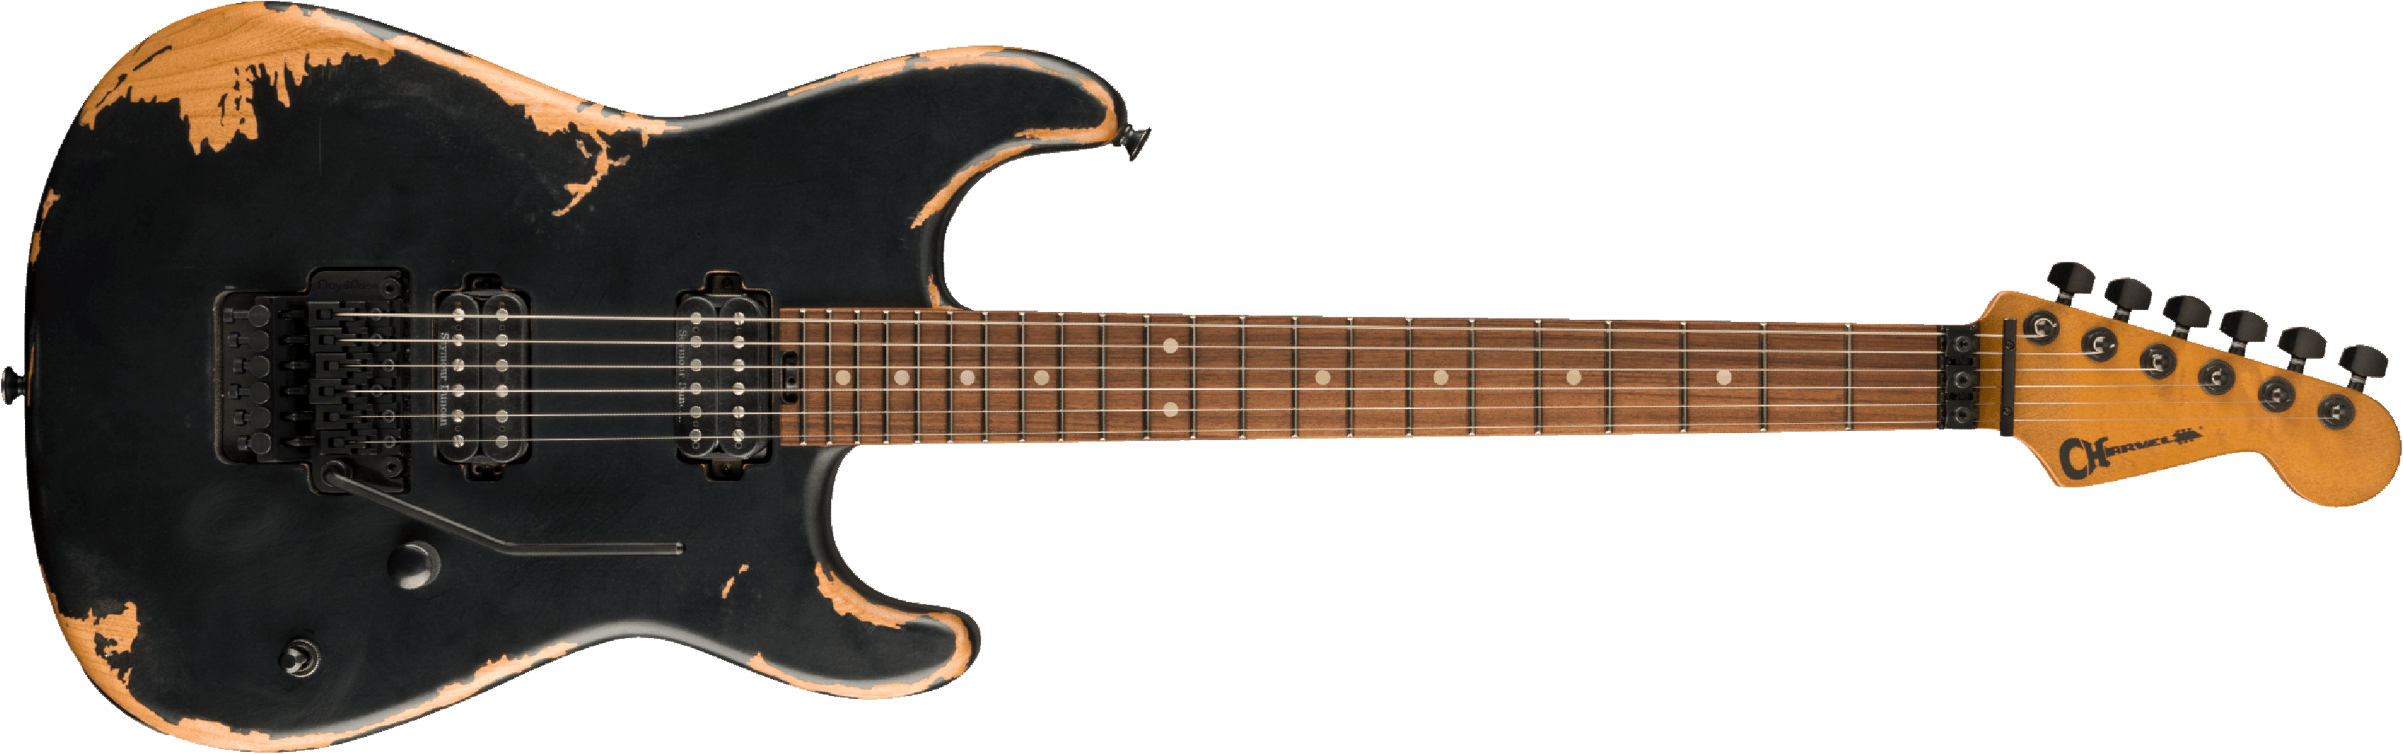 Charvel San Dimas Pro-mod Relic Style 1 Hh Fr E Pf - Weathered Black - Guitare Électrique Forme Str - Main picture